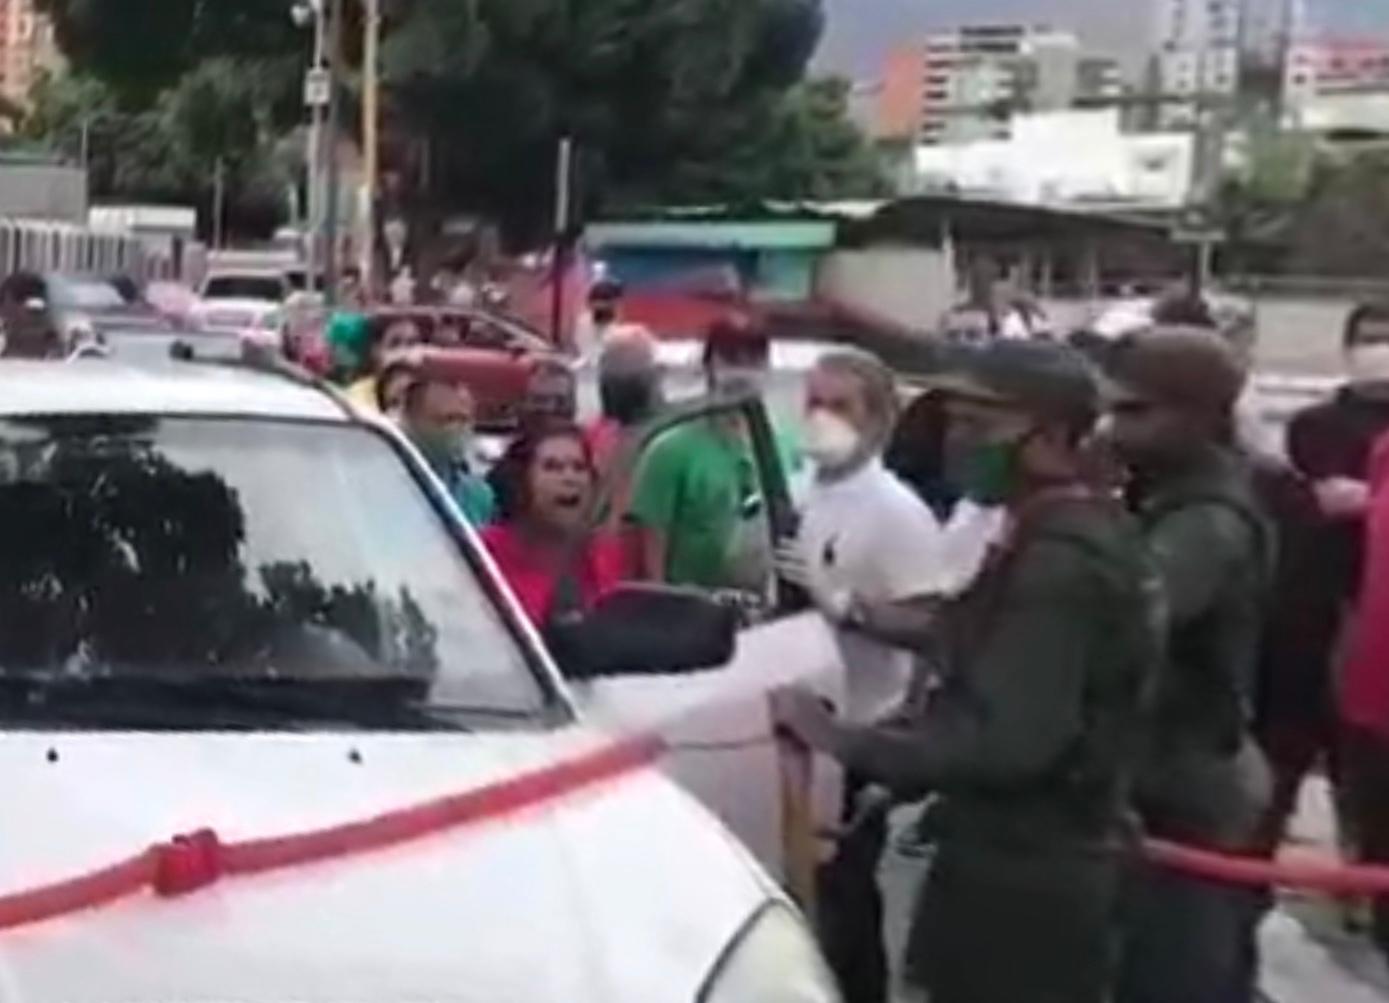 La gasolina iraní no duró nada y los conductores estallaron contra la GNB por perder su tiempo (Video)